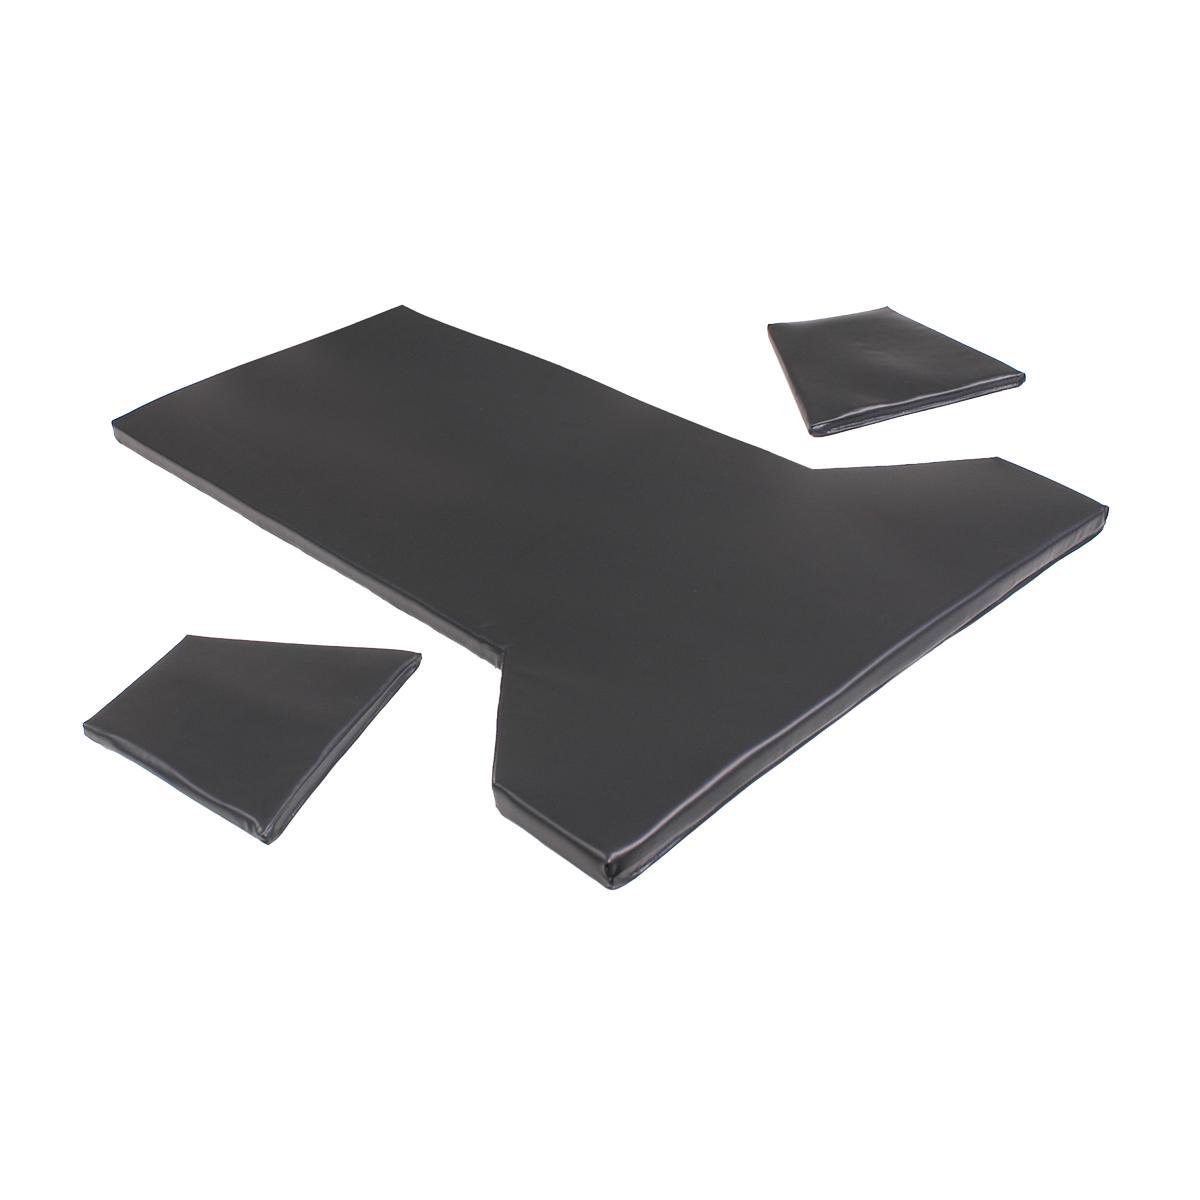 Conjunto de almofadas para mesa ampulheta Carbon Lights™, nº A-30502-1-B, nº A-30502-B, vista diagonal